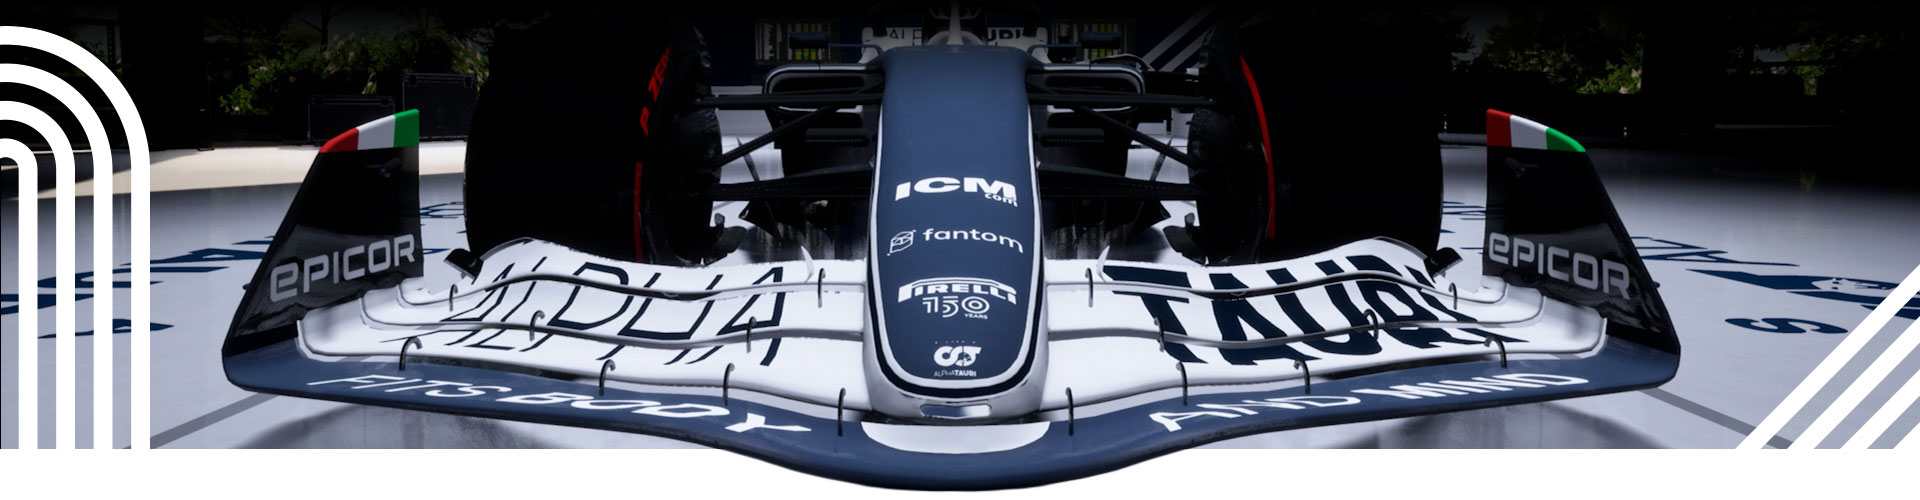 Motív pretekárskeho pruhu prekrytý nad odpočívajúcim vozidlom F1.